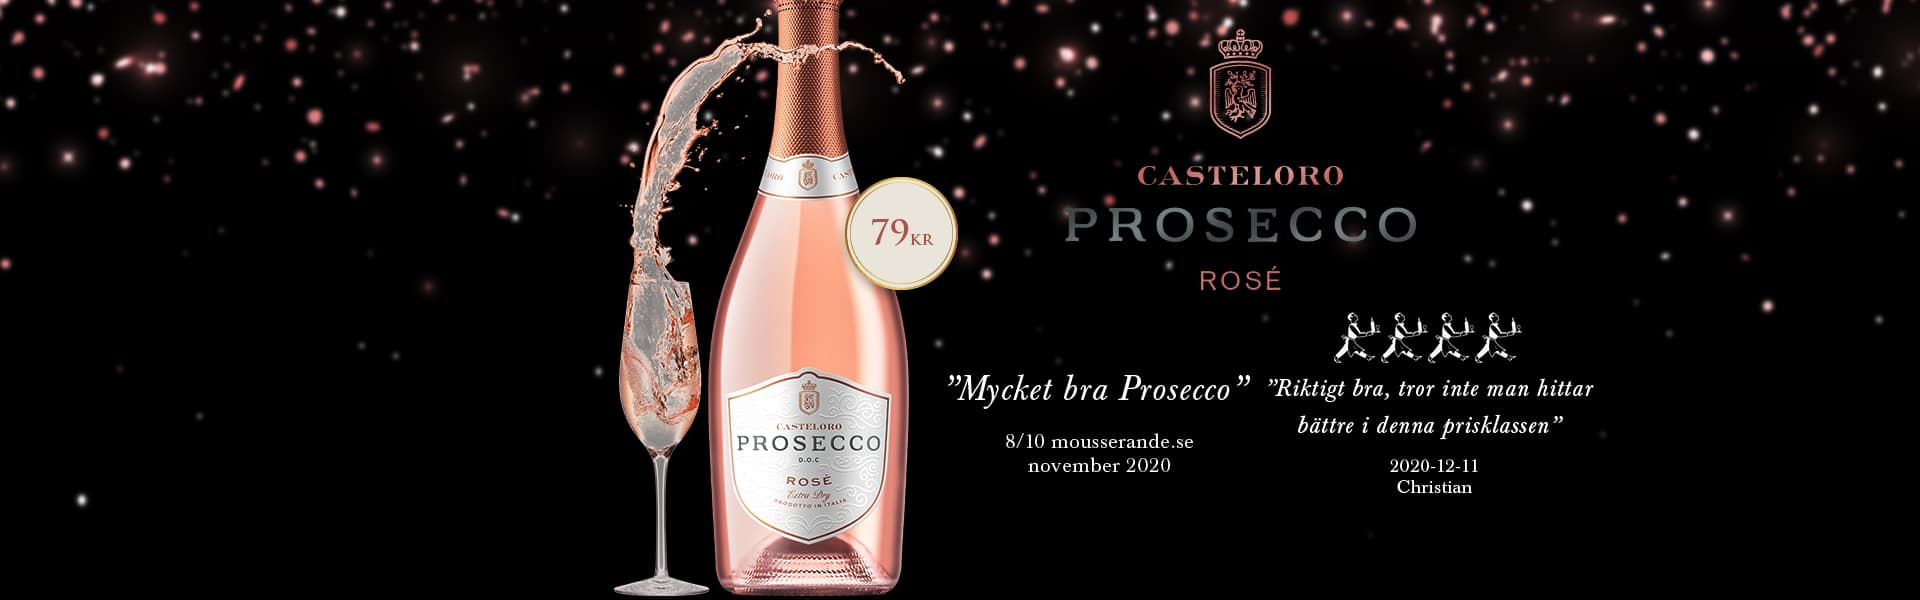 Casteloro Prosecco Rosé